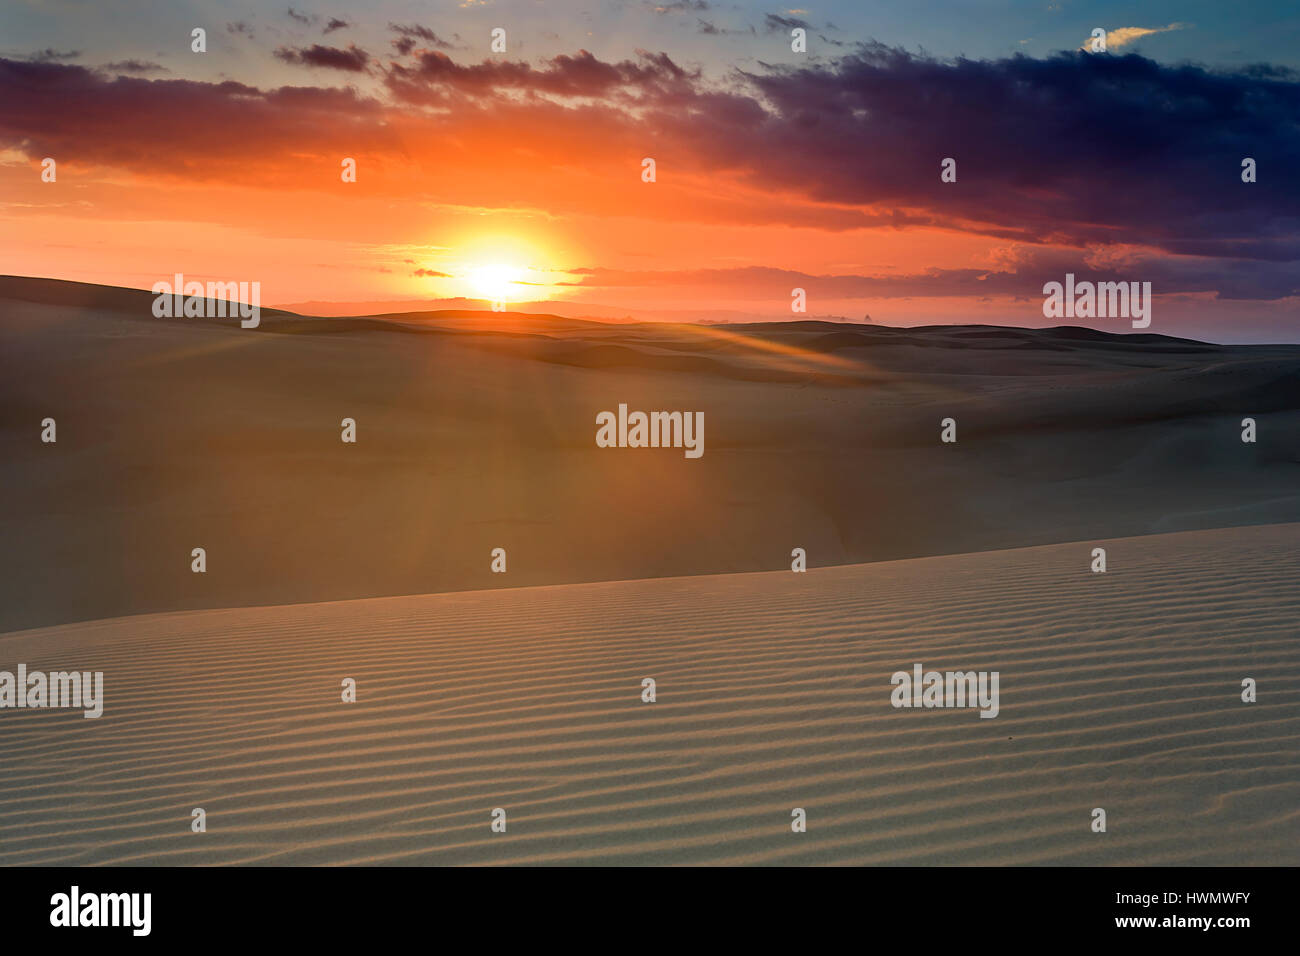 Soleil levant lumineux sur la terre d'horizon dans les dunes de sable de Stockton Beach, NSW, Australie. Structure rayée des collines de sable doux sous les poutres chaud et doux de l'al. Banque D'Images